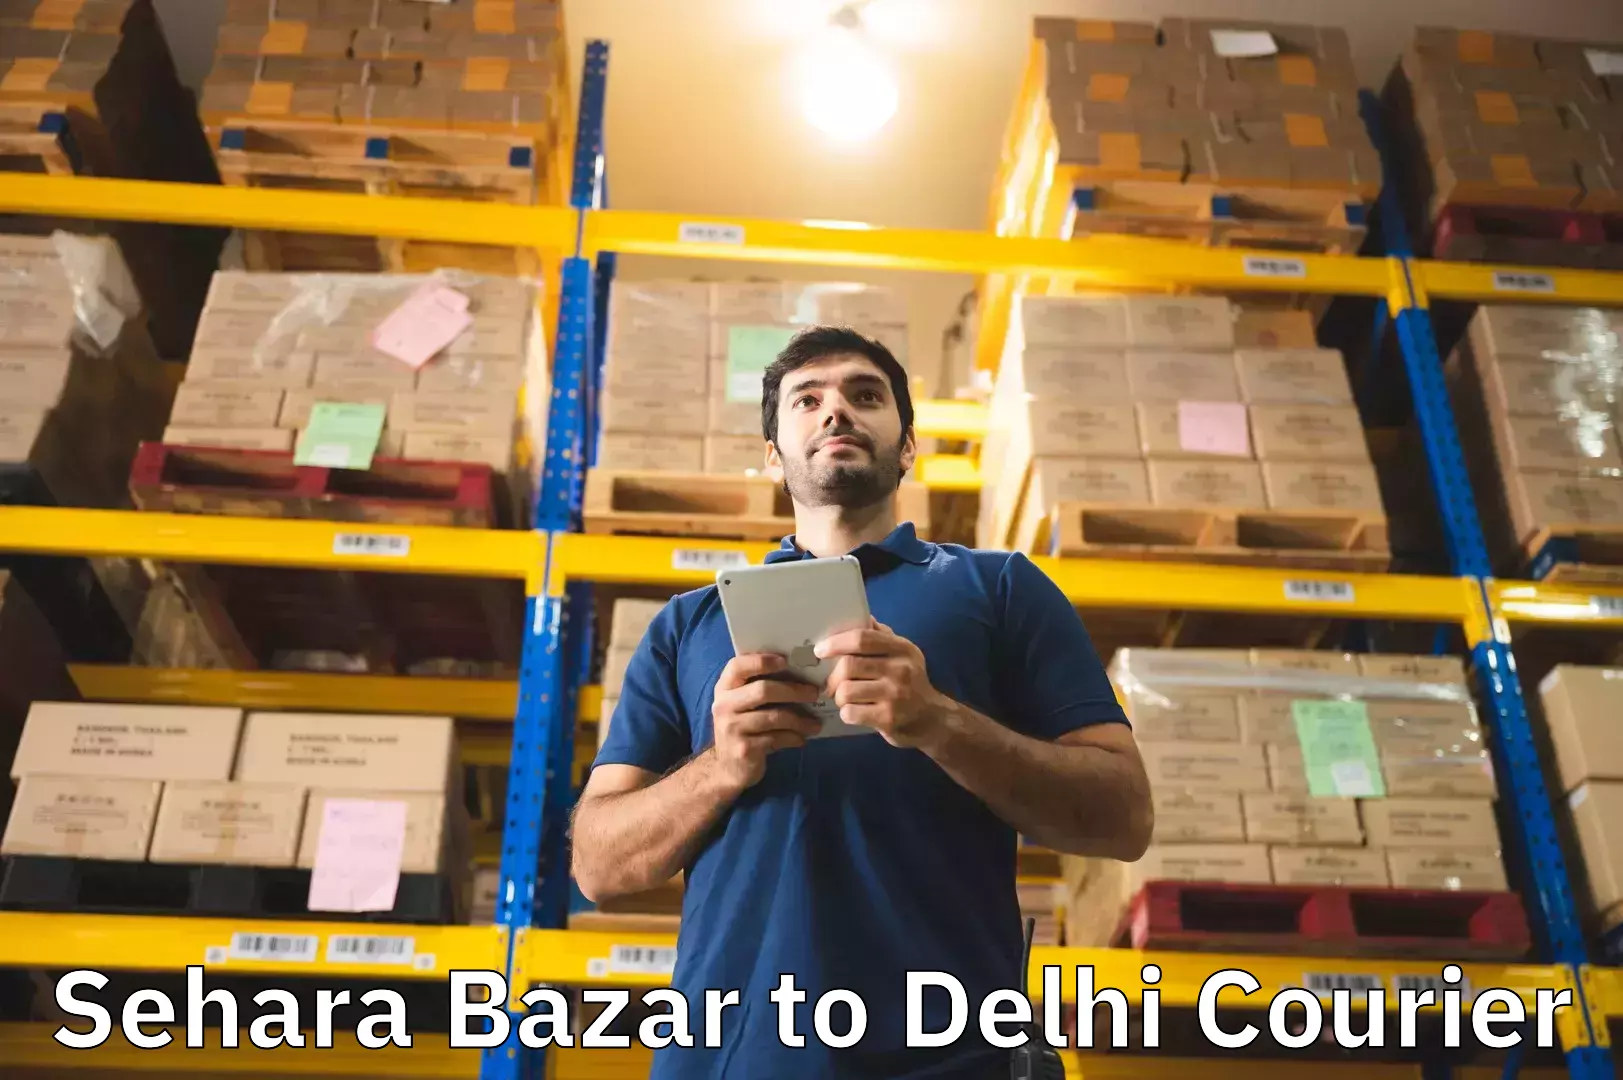 Digital baggage courier Sehara Bazar to University of Delhi